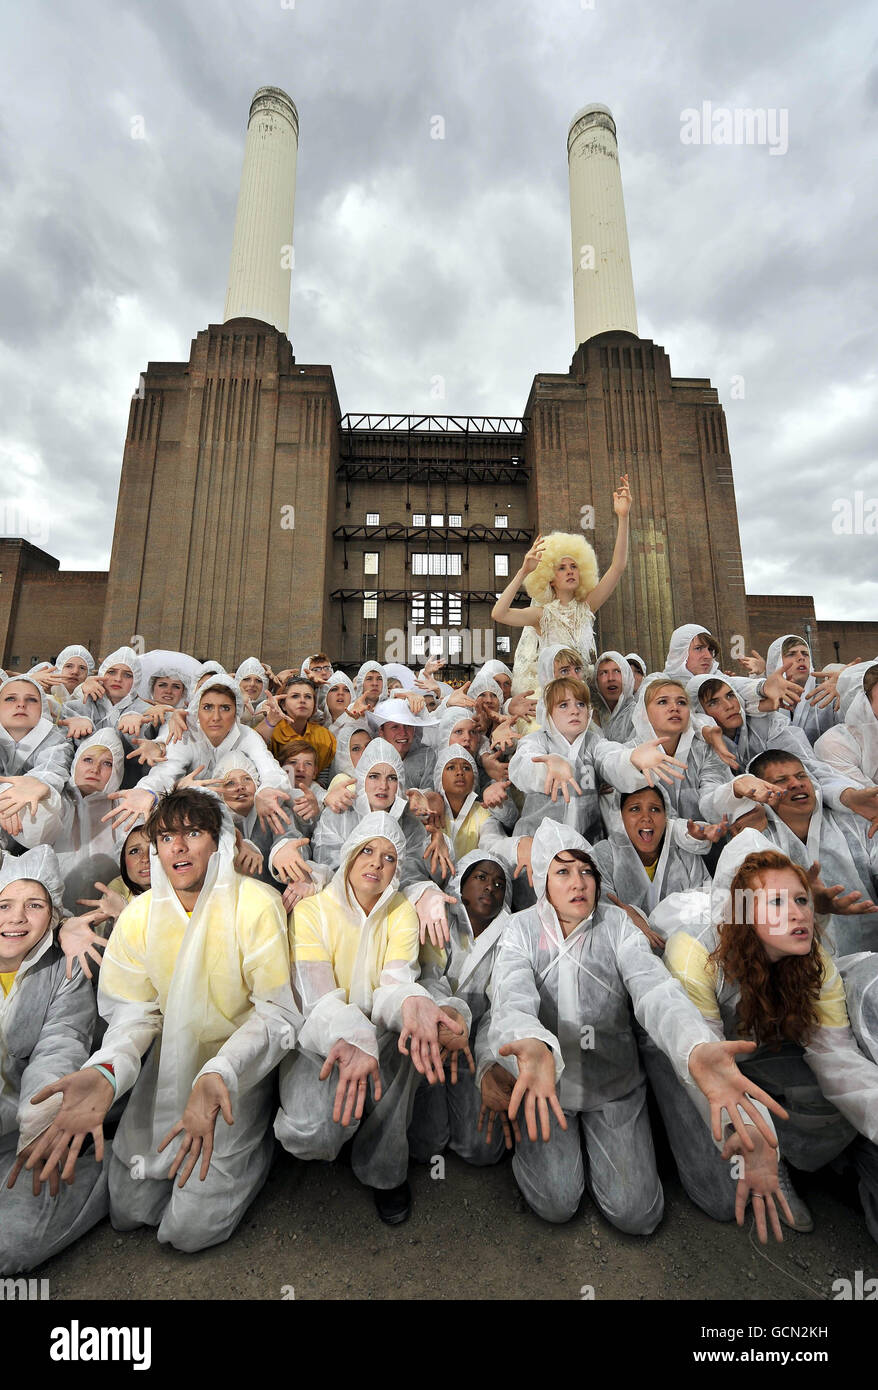 Rund 500 Schauspieler des National Youth Theatre of Great Britain spielen S'warm im Battersea Power Station in London, um auf die angebliche globale Umweltkrise durch schwindende Bienenpopulationen aufmerksam zu machen. Stockfoto